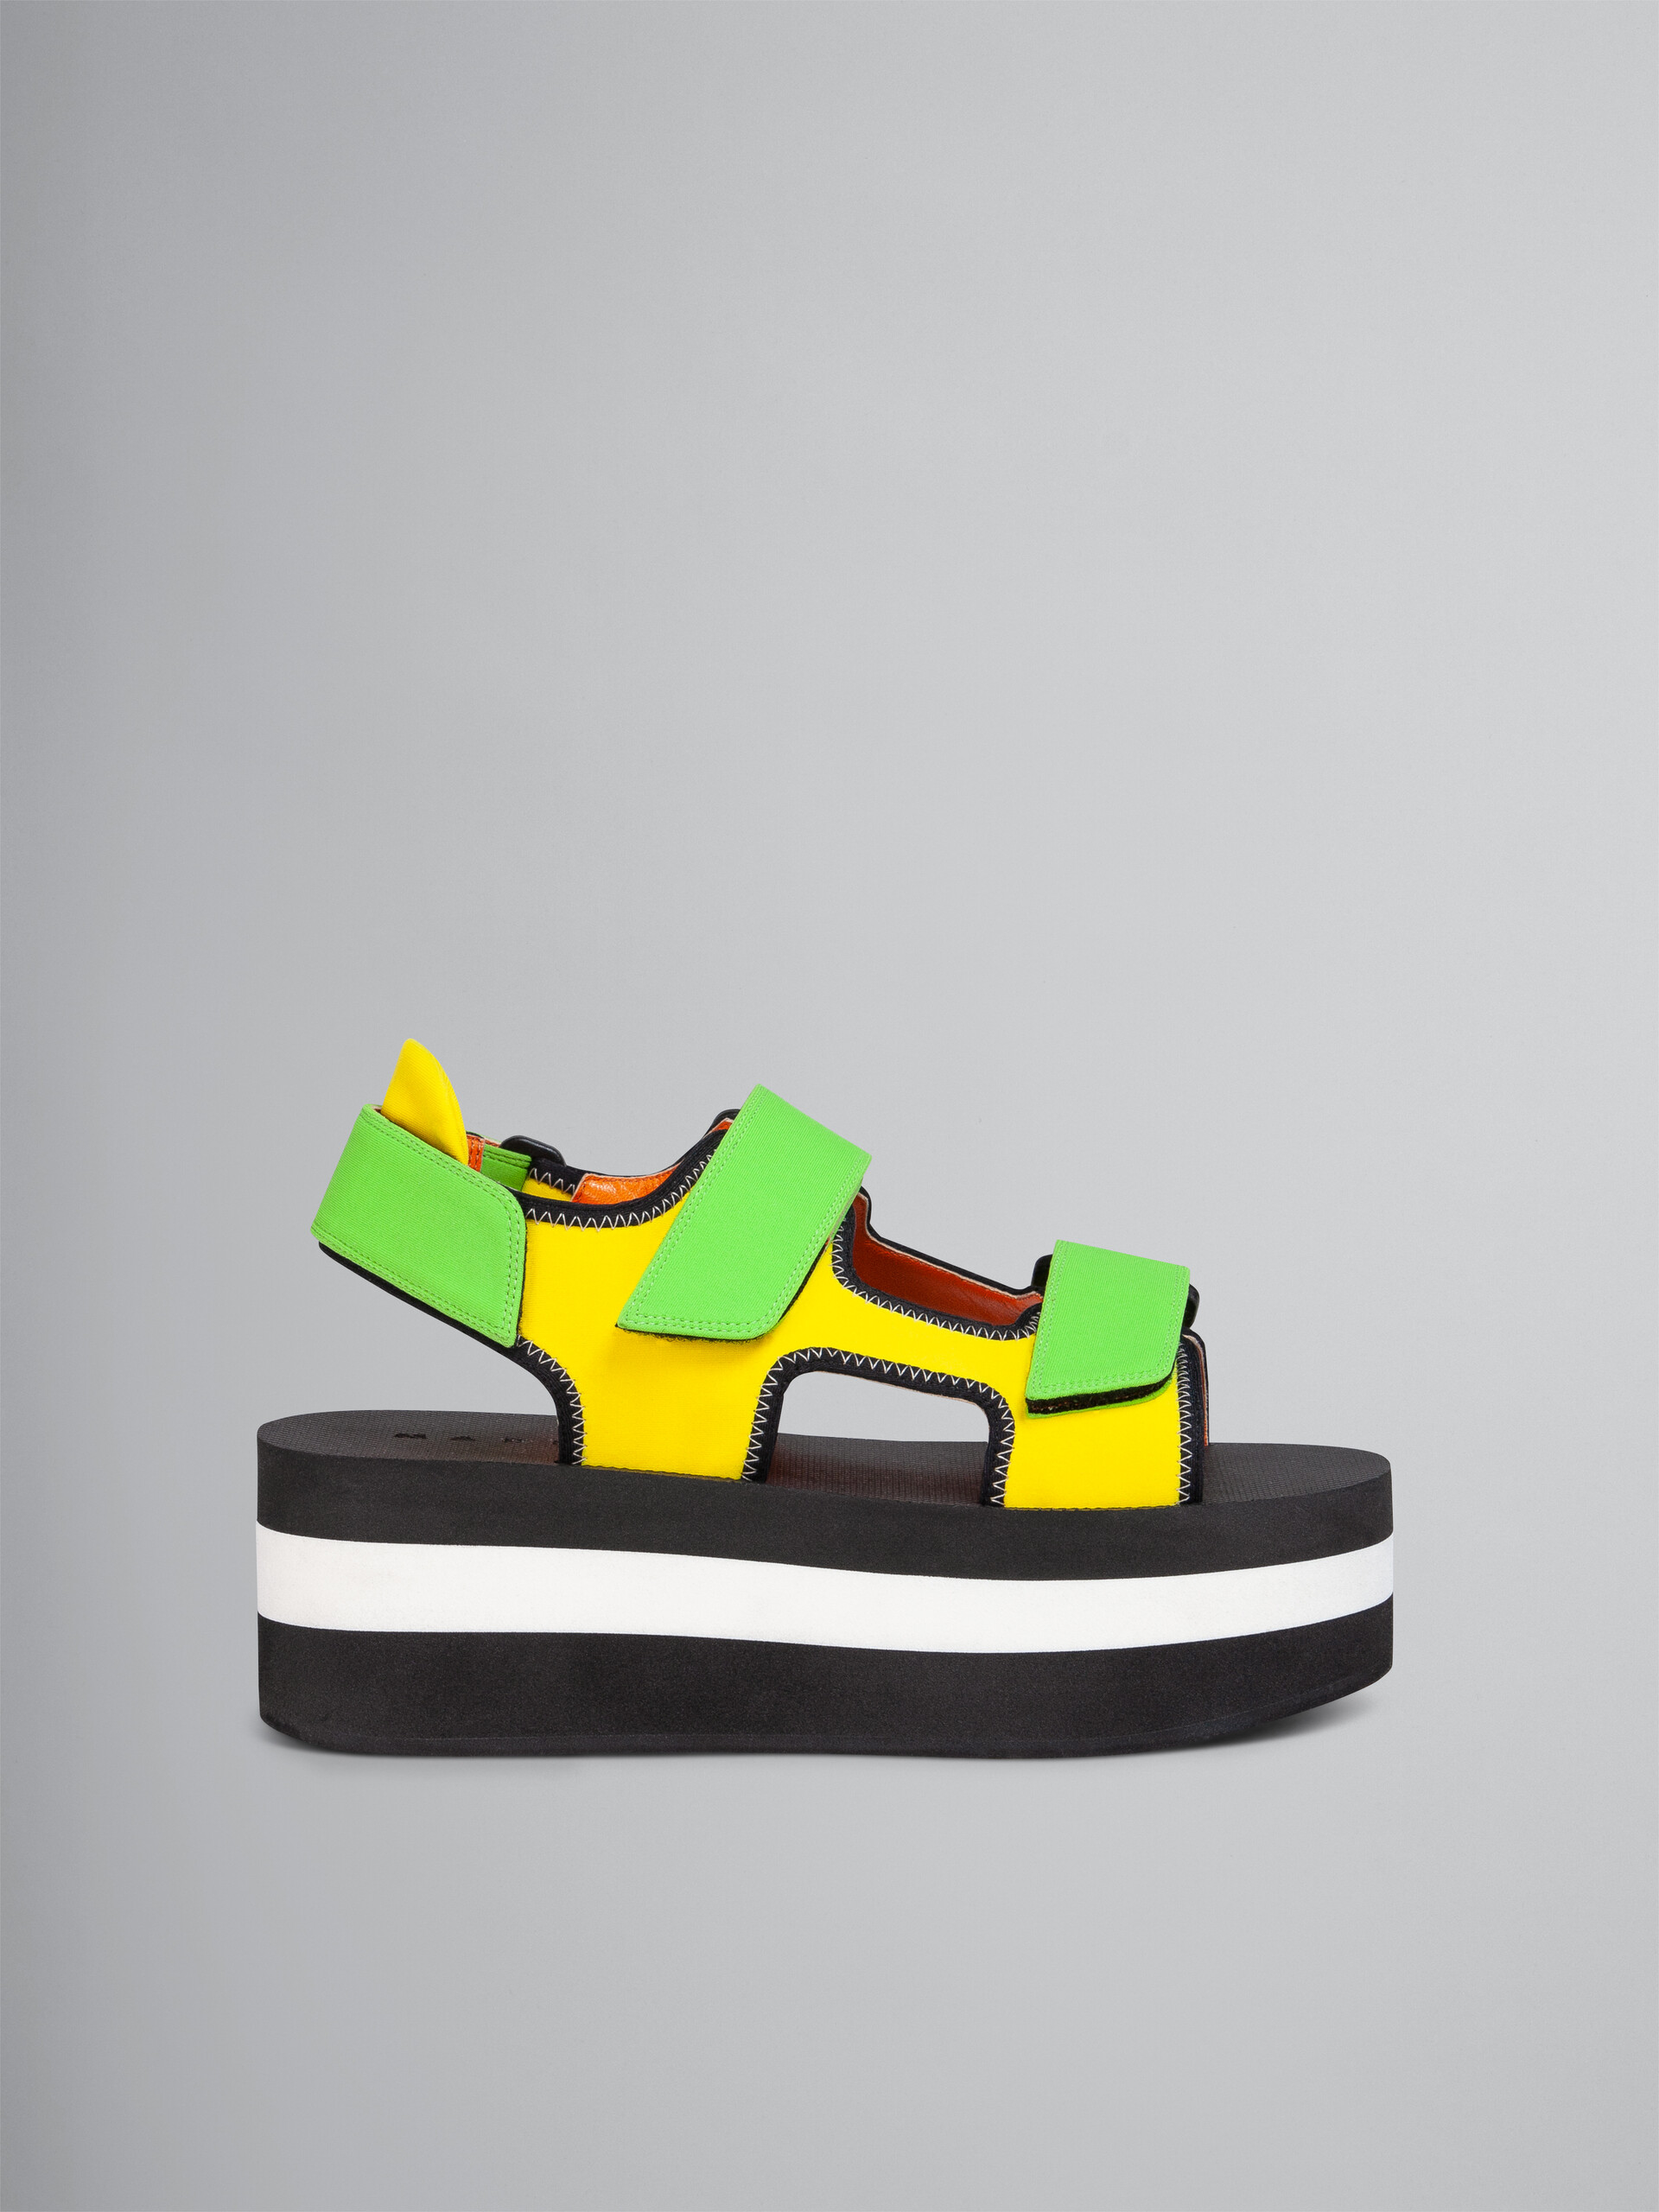 Sandale en tissu technique jaune et vert - Sandales - Image 1